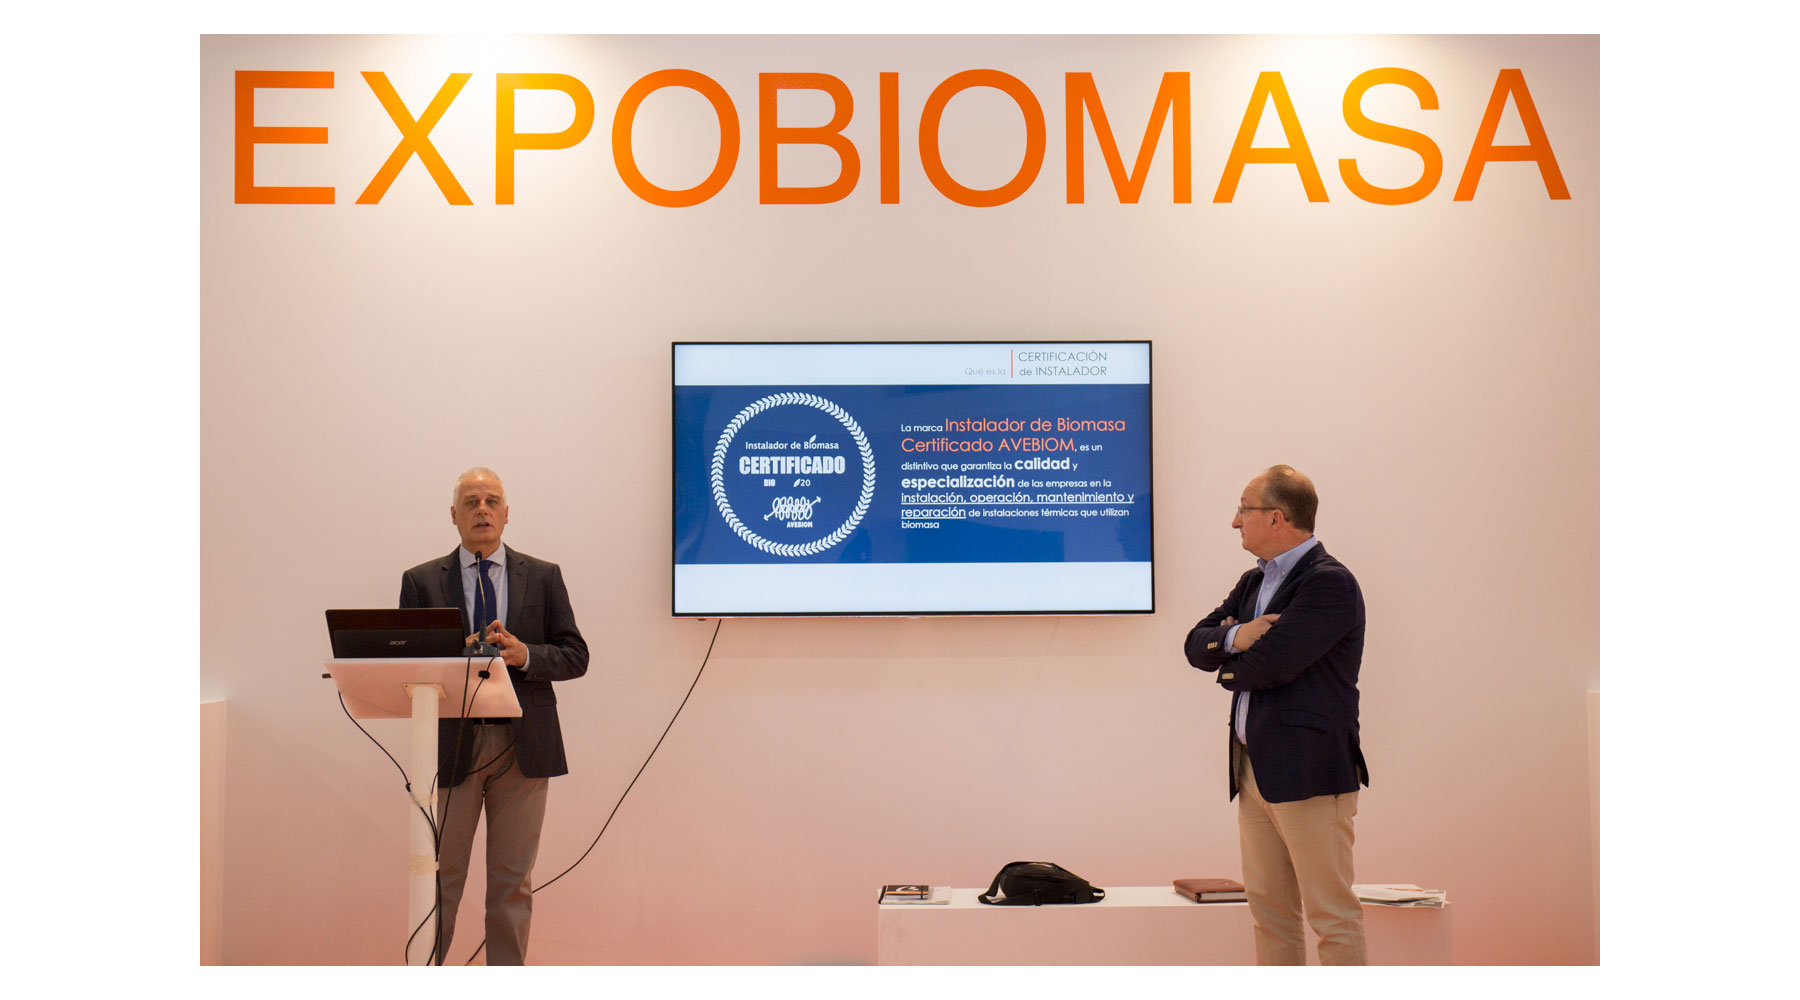 Durante la ltima edicin de Expobiomasa se ha dado a conocer el Sello de Calidad para los instaladores de biomasa...